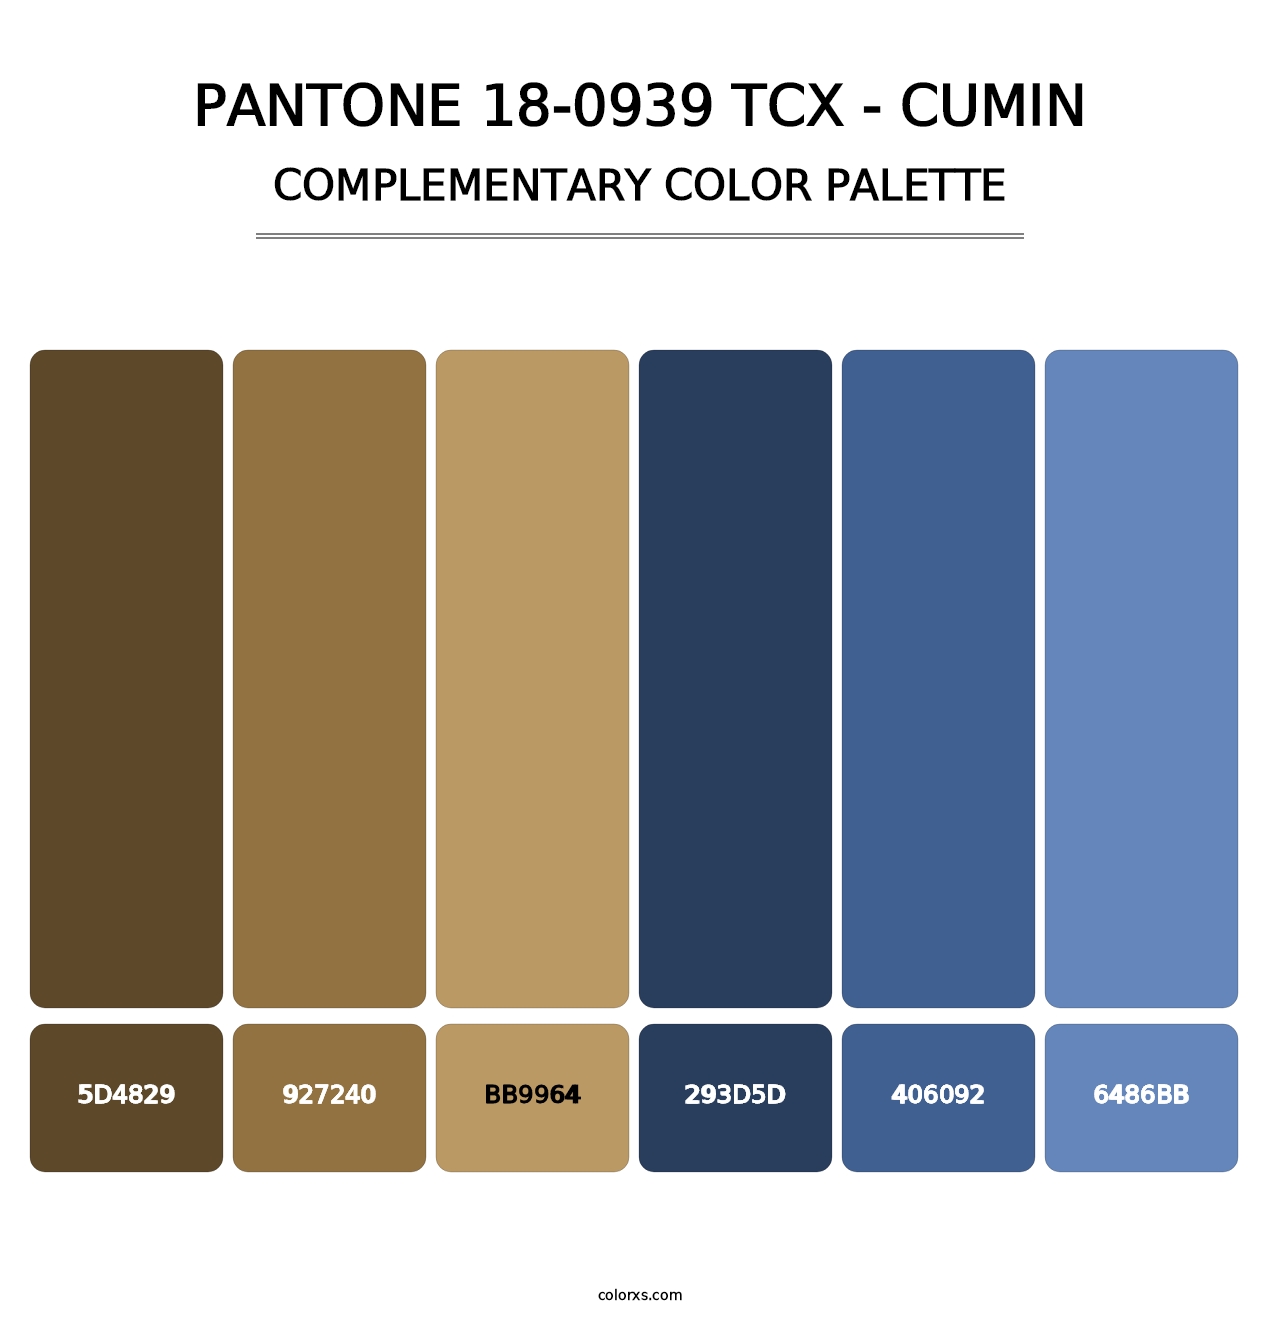 PANTONE 18-0939 TCX - Cumin - Complementary Color Palette